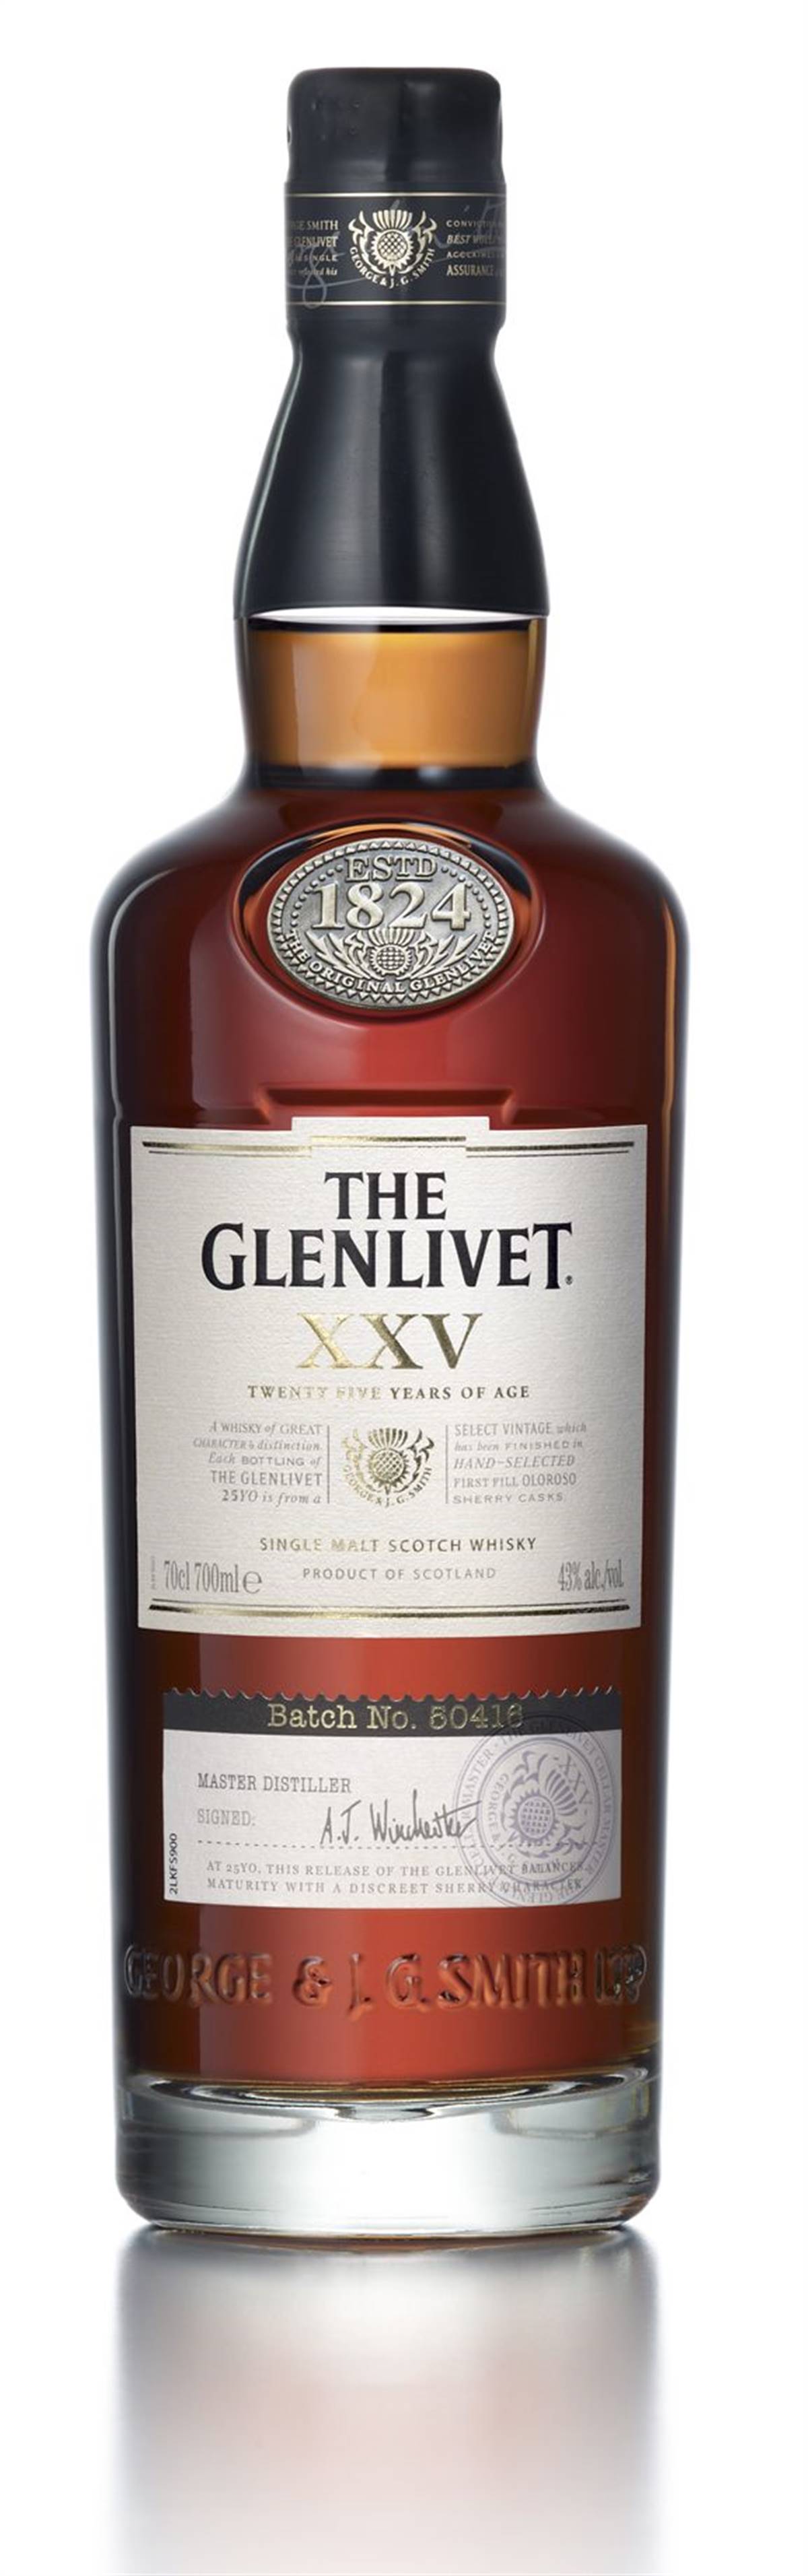 The Glenlivet 25